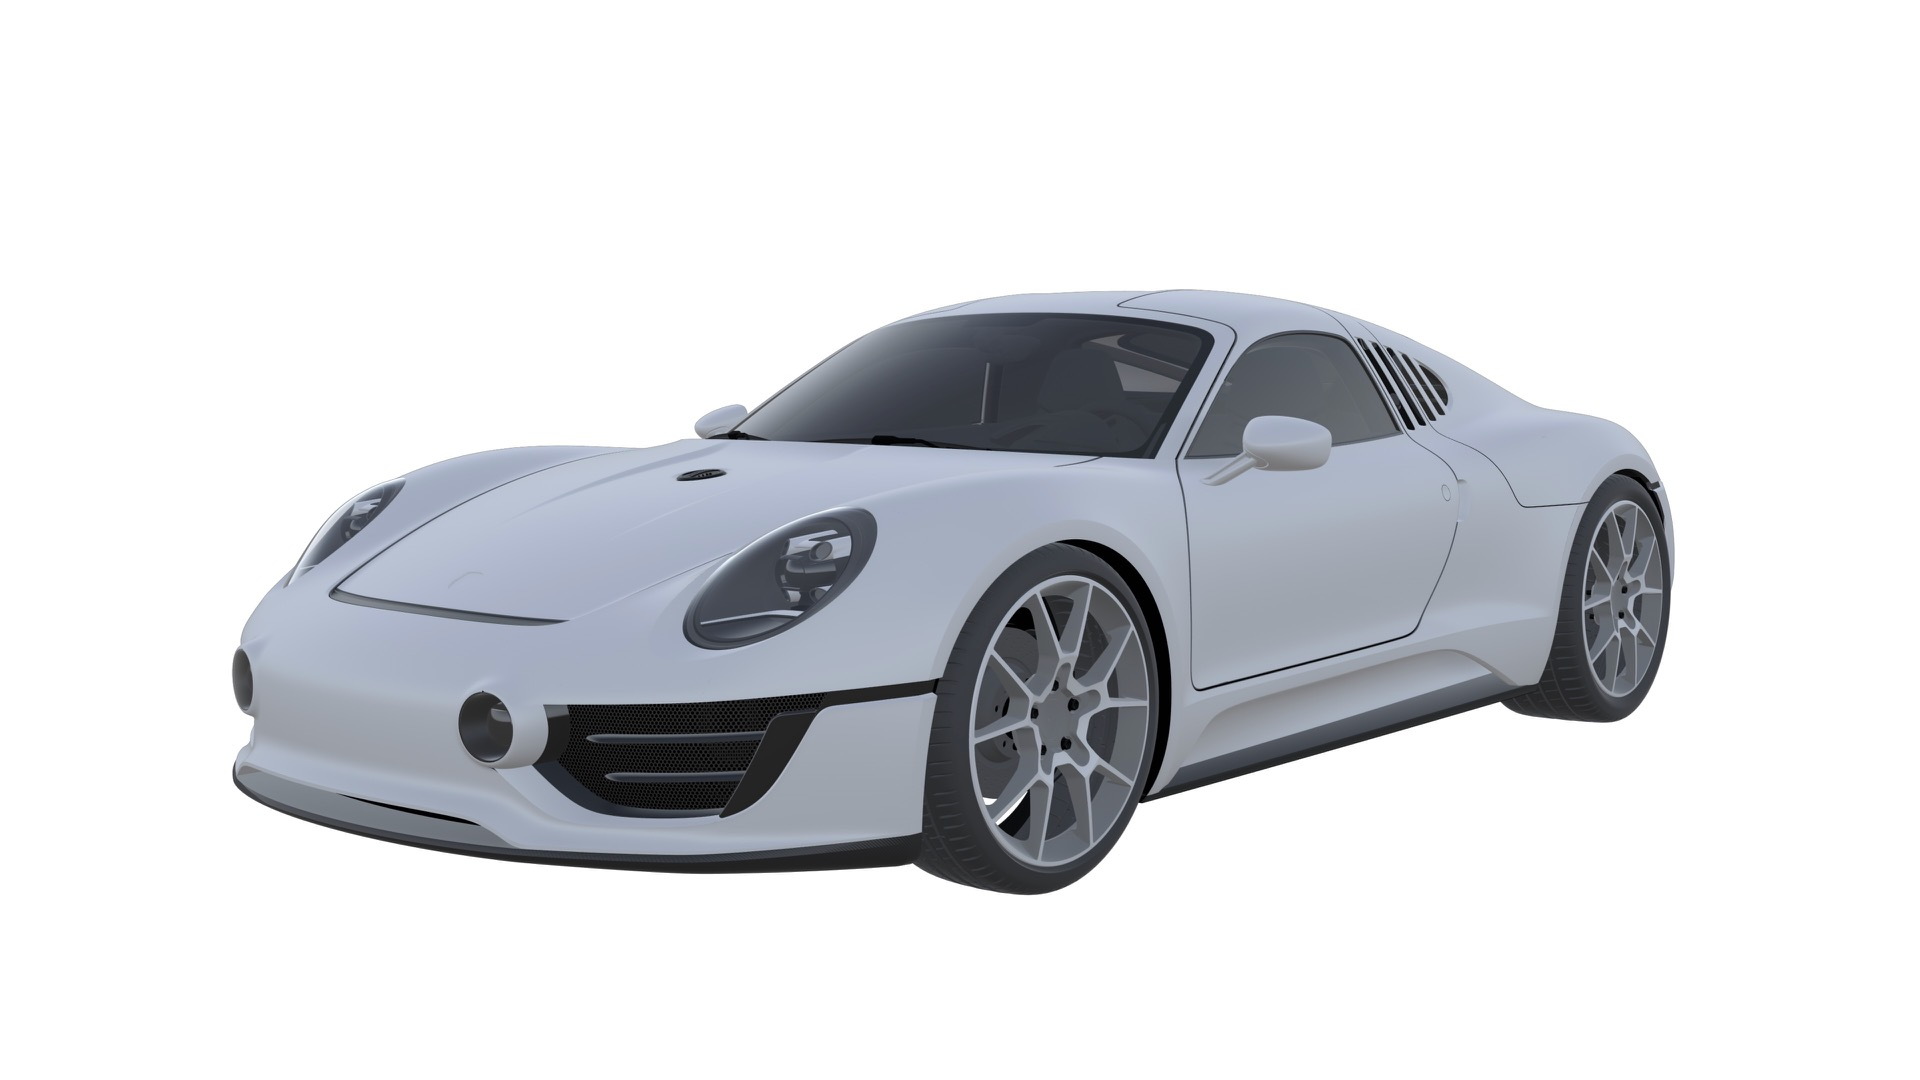 Porsche Le Mans Living Legend patent drawing